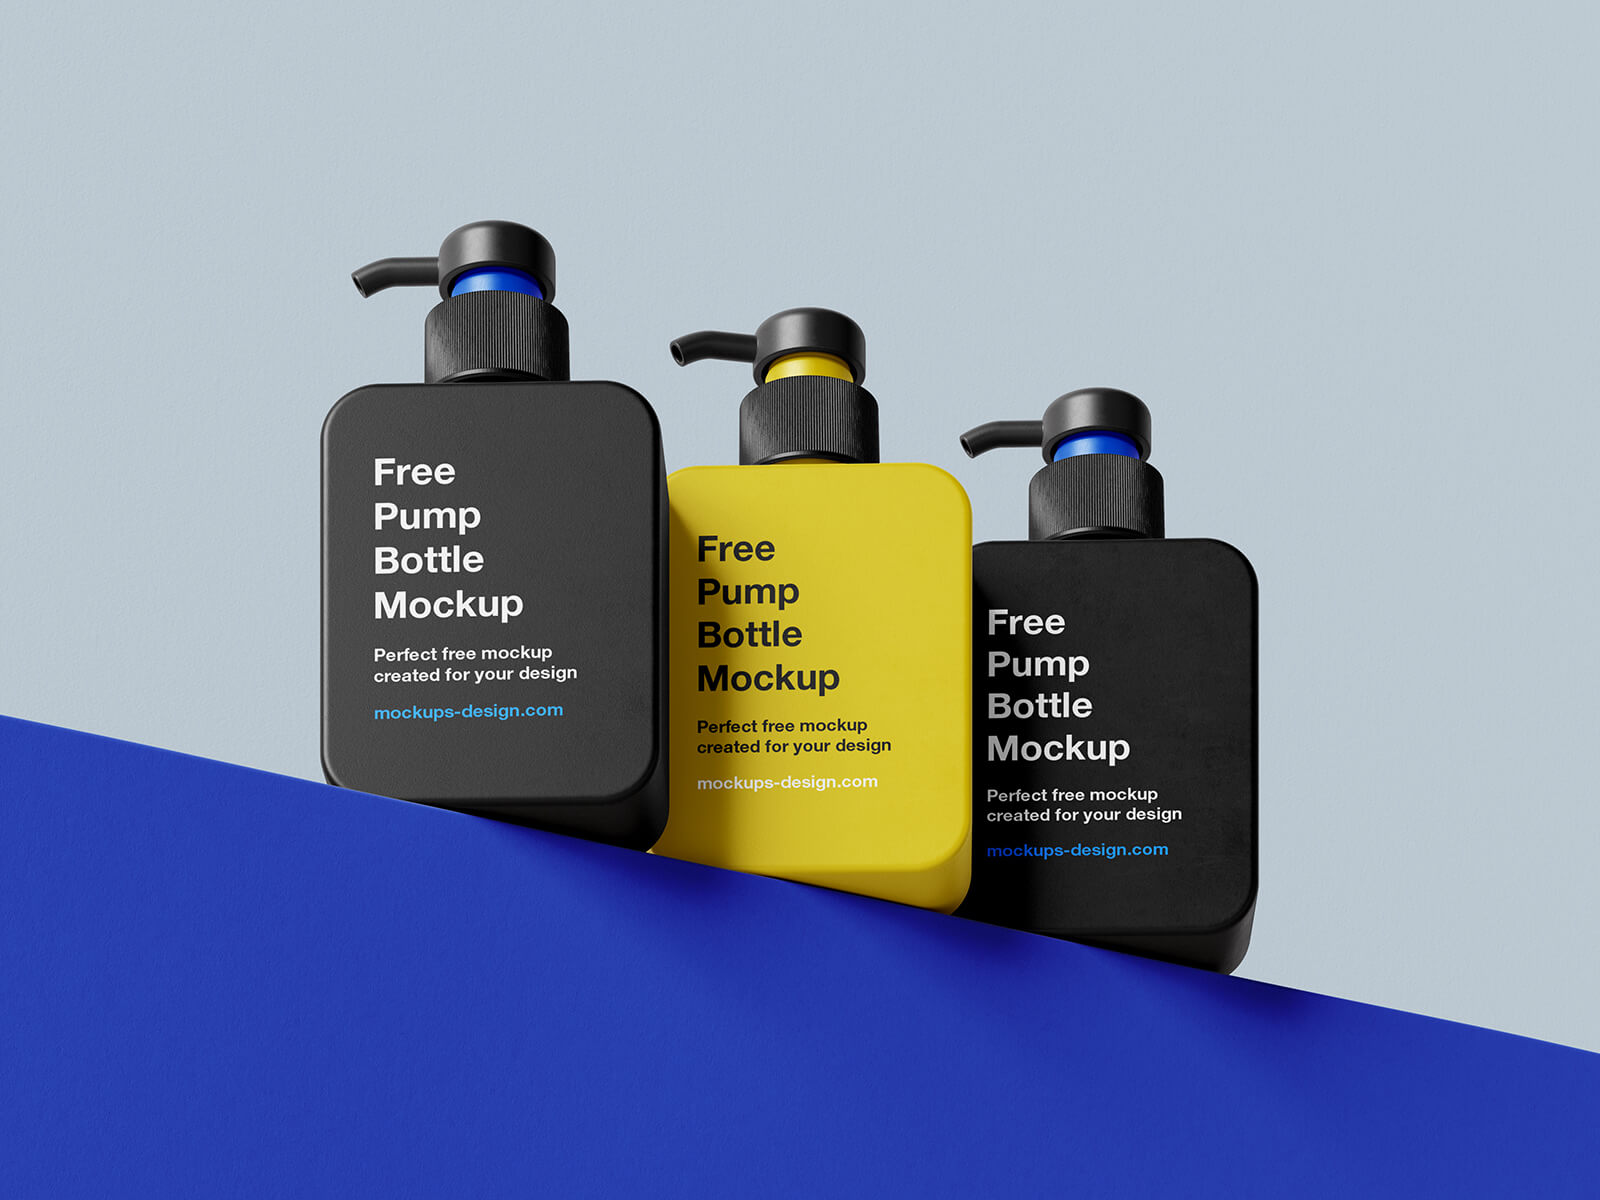 5 Free Rectangle Pump Bottle Dispenser Mockup PSD Files - Good Mockups